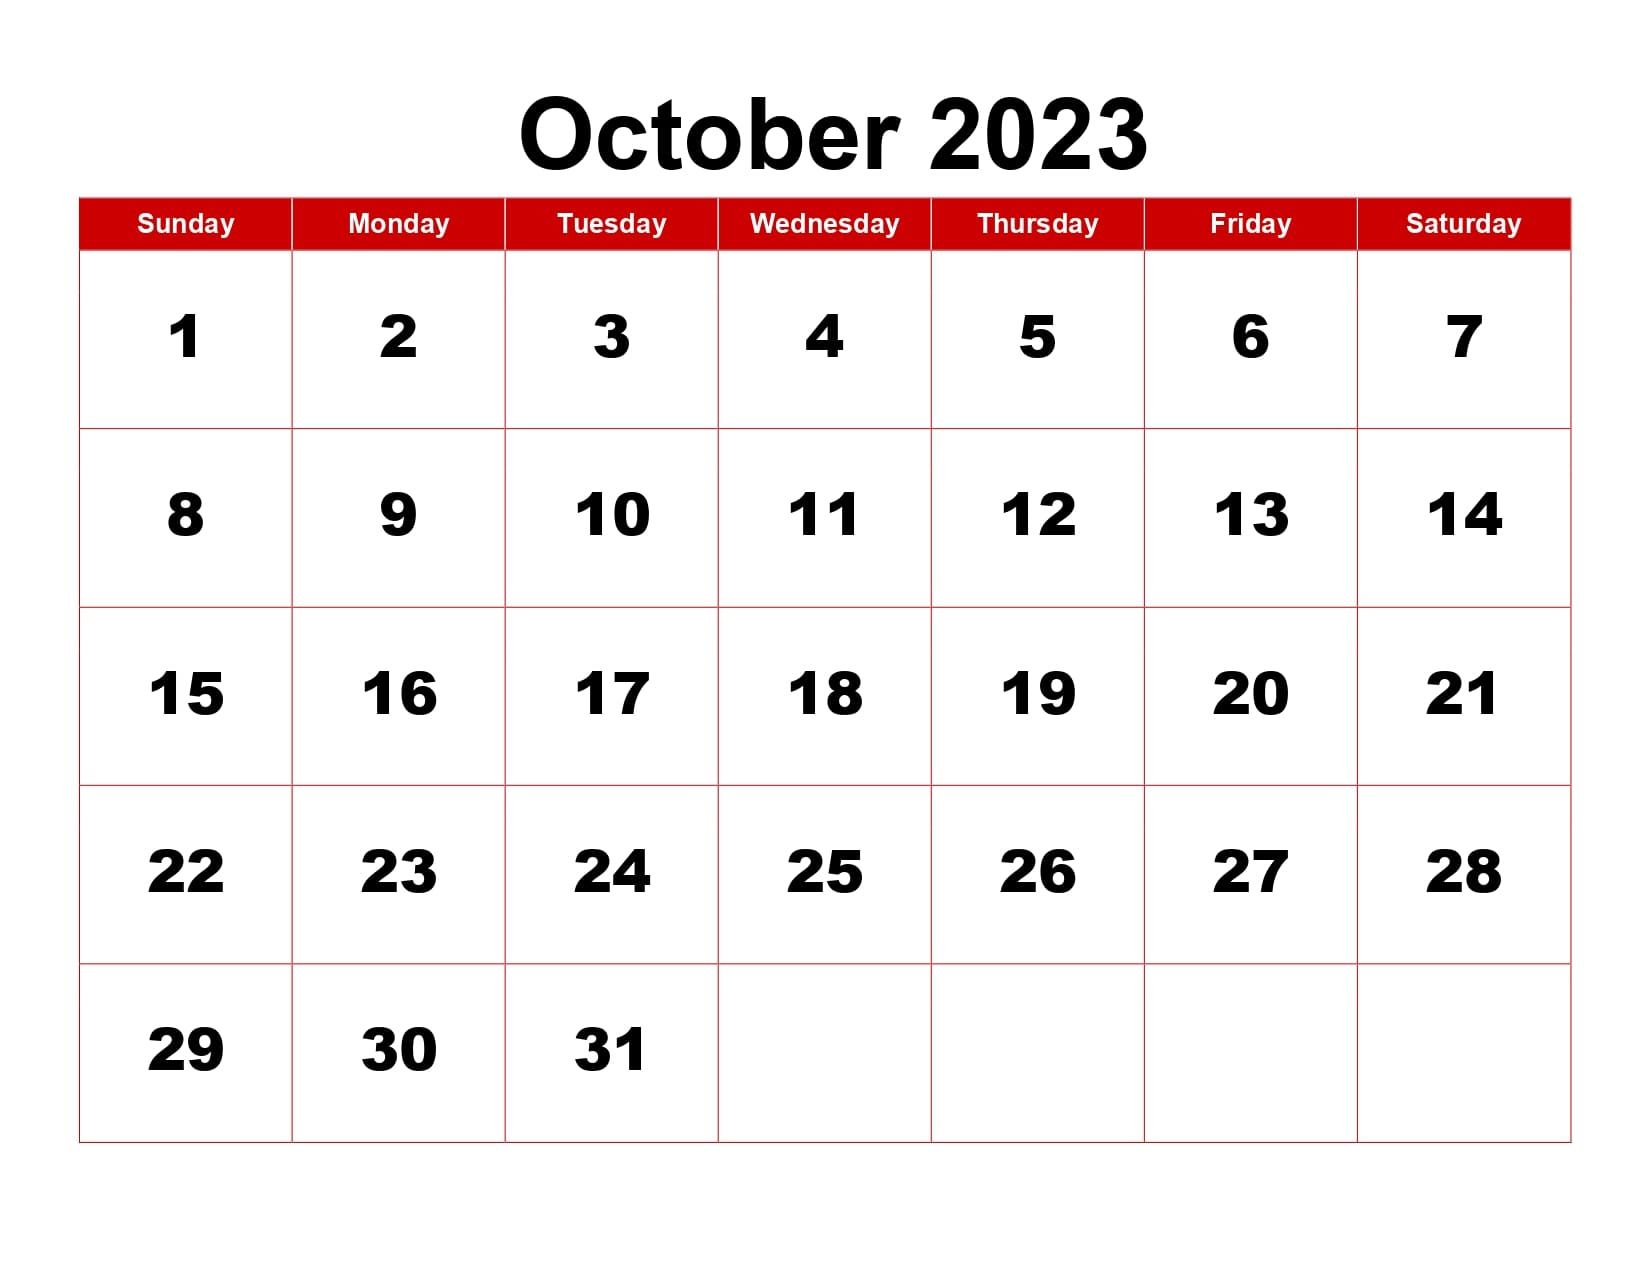 October 2023 Calendar Red Background